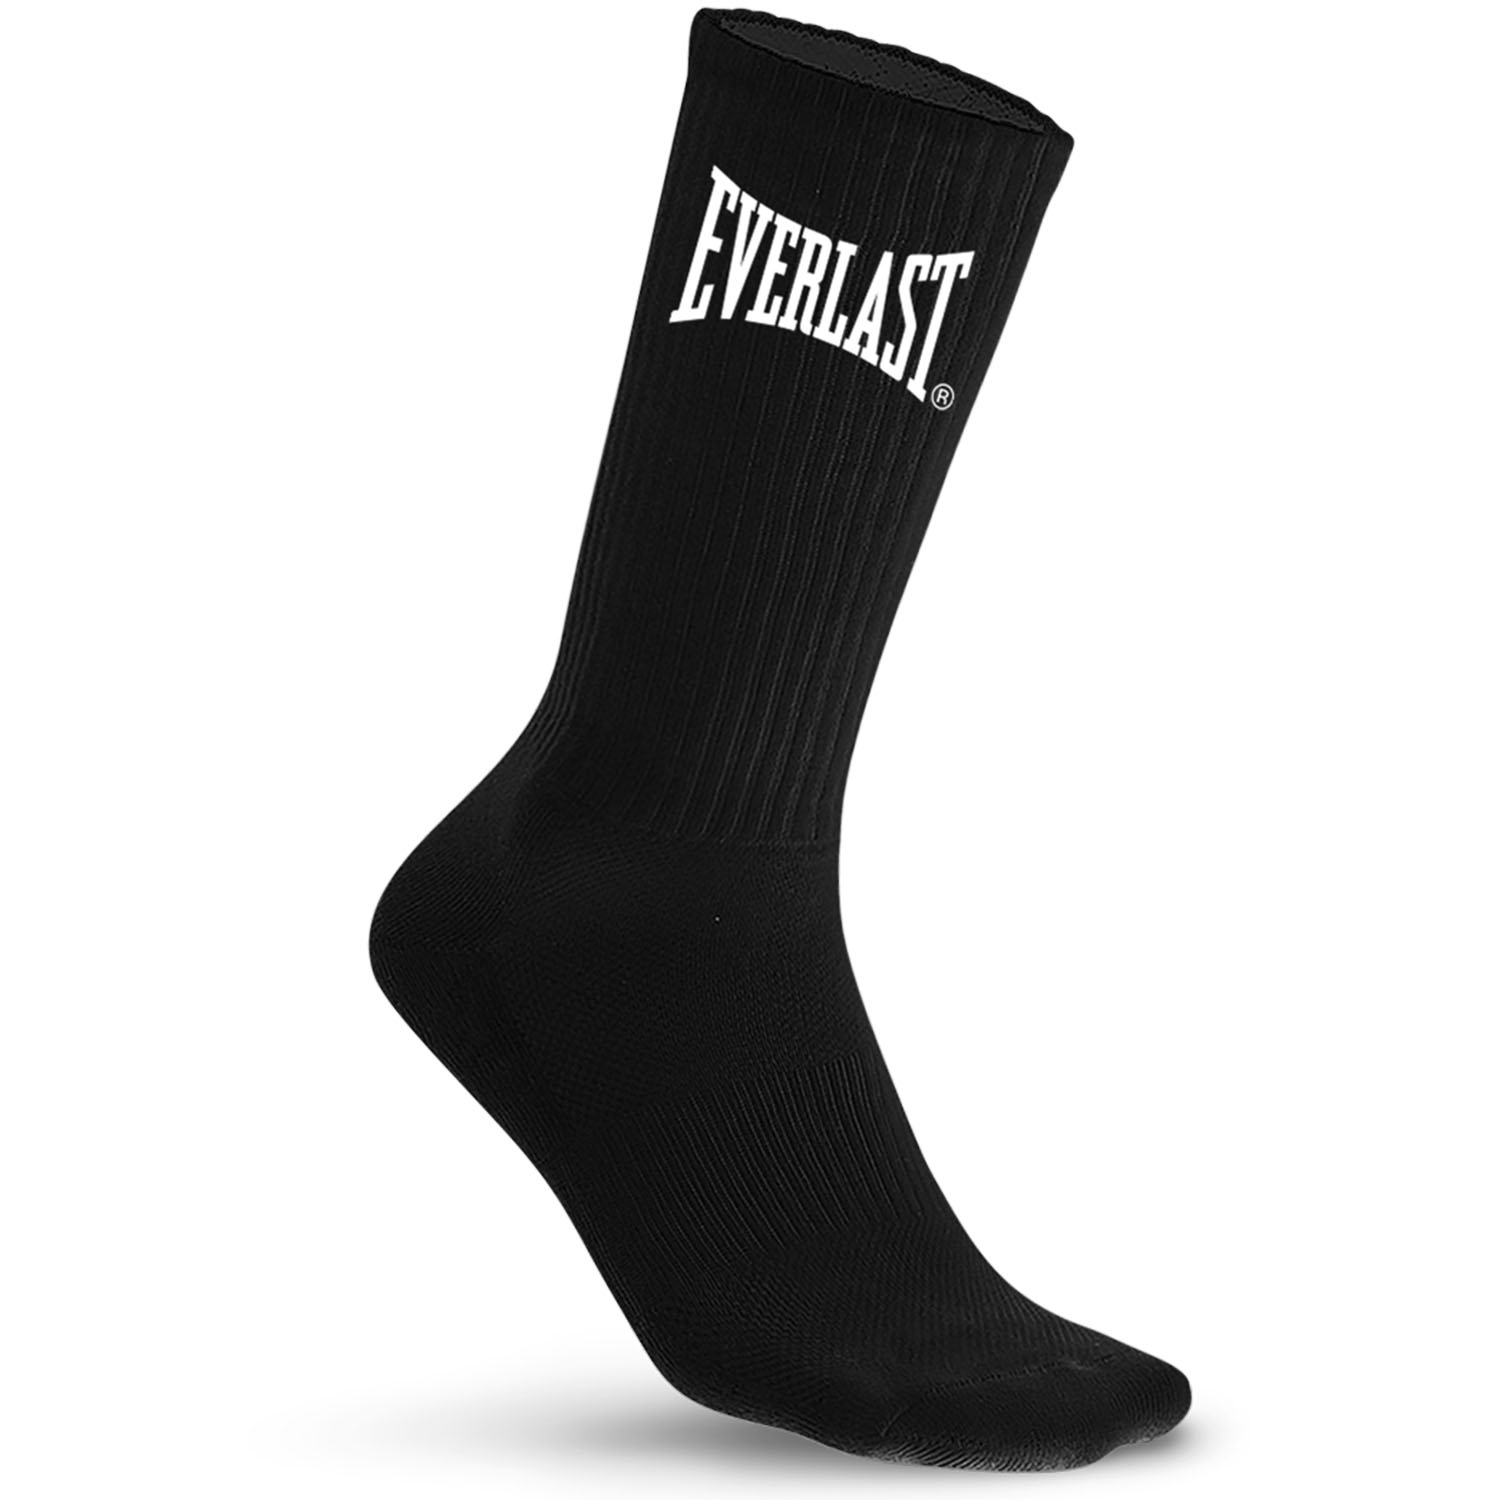 Everlast Socks, 10er Pack, black